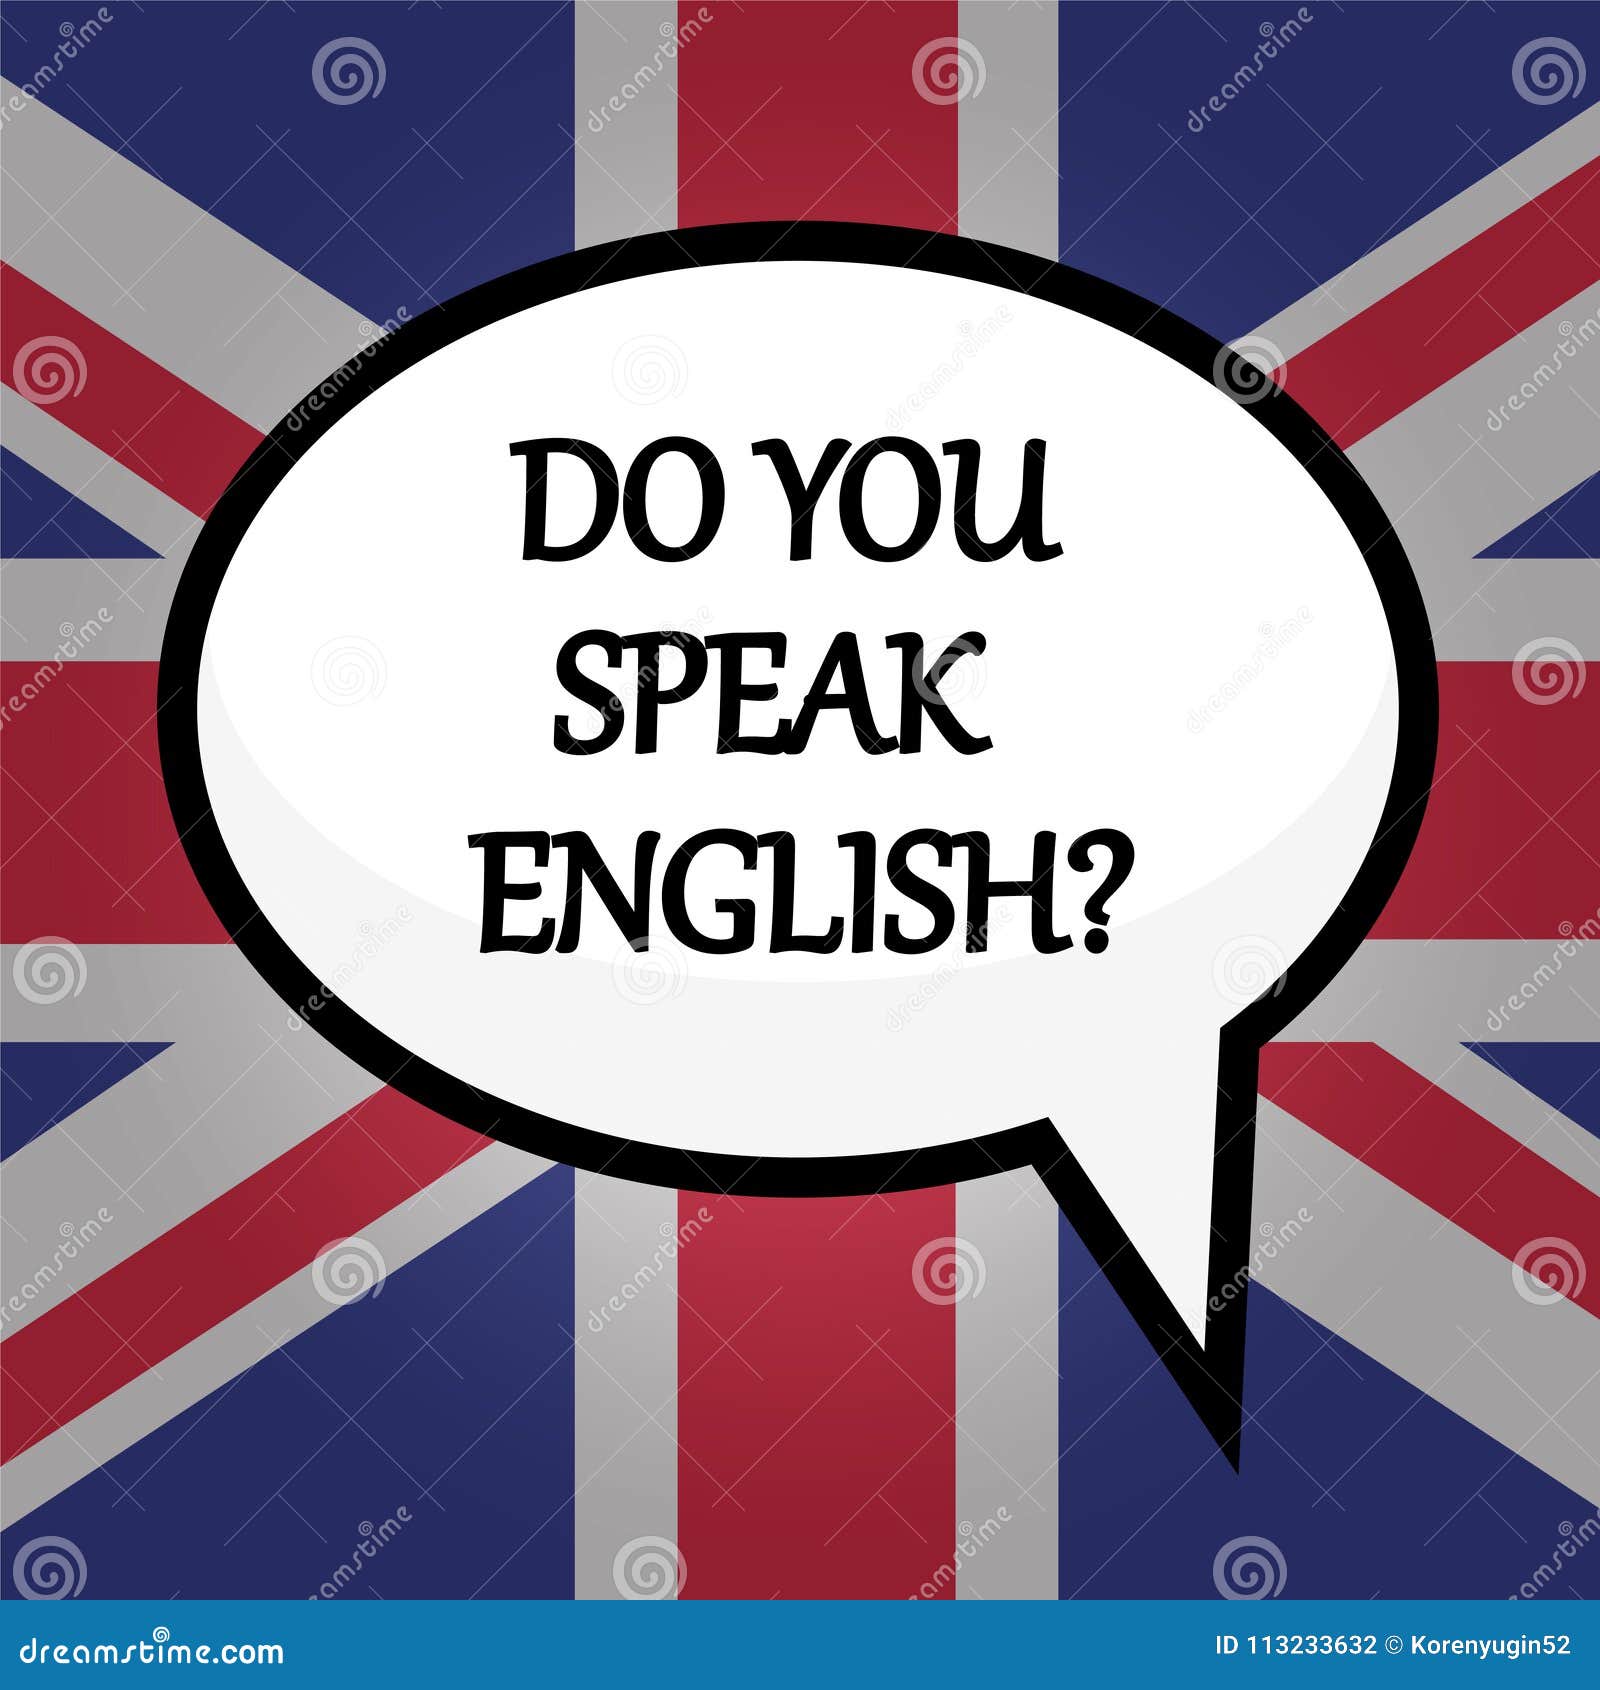 Can you speak english now. Do you speak English. Let's speak English. Speak English надпись. Плакат do you speak English.